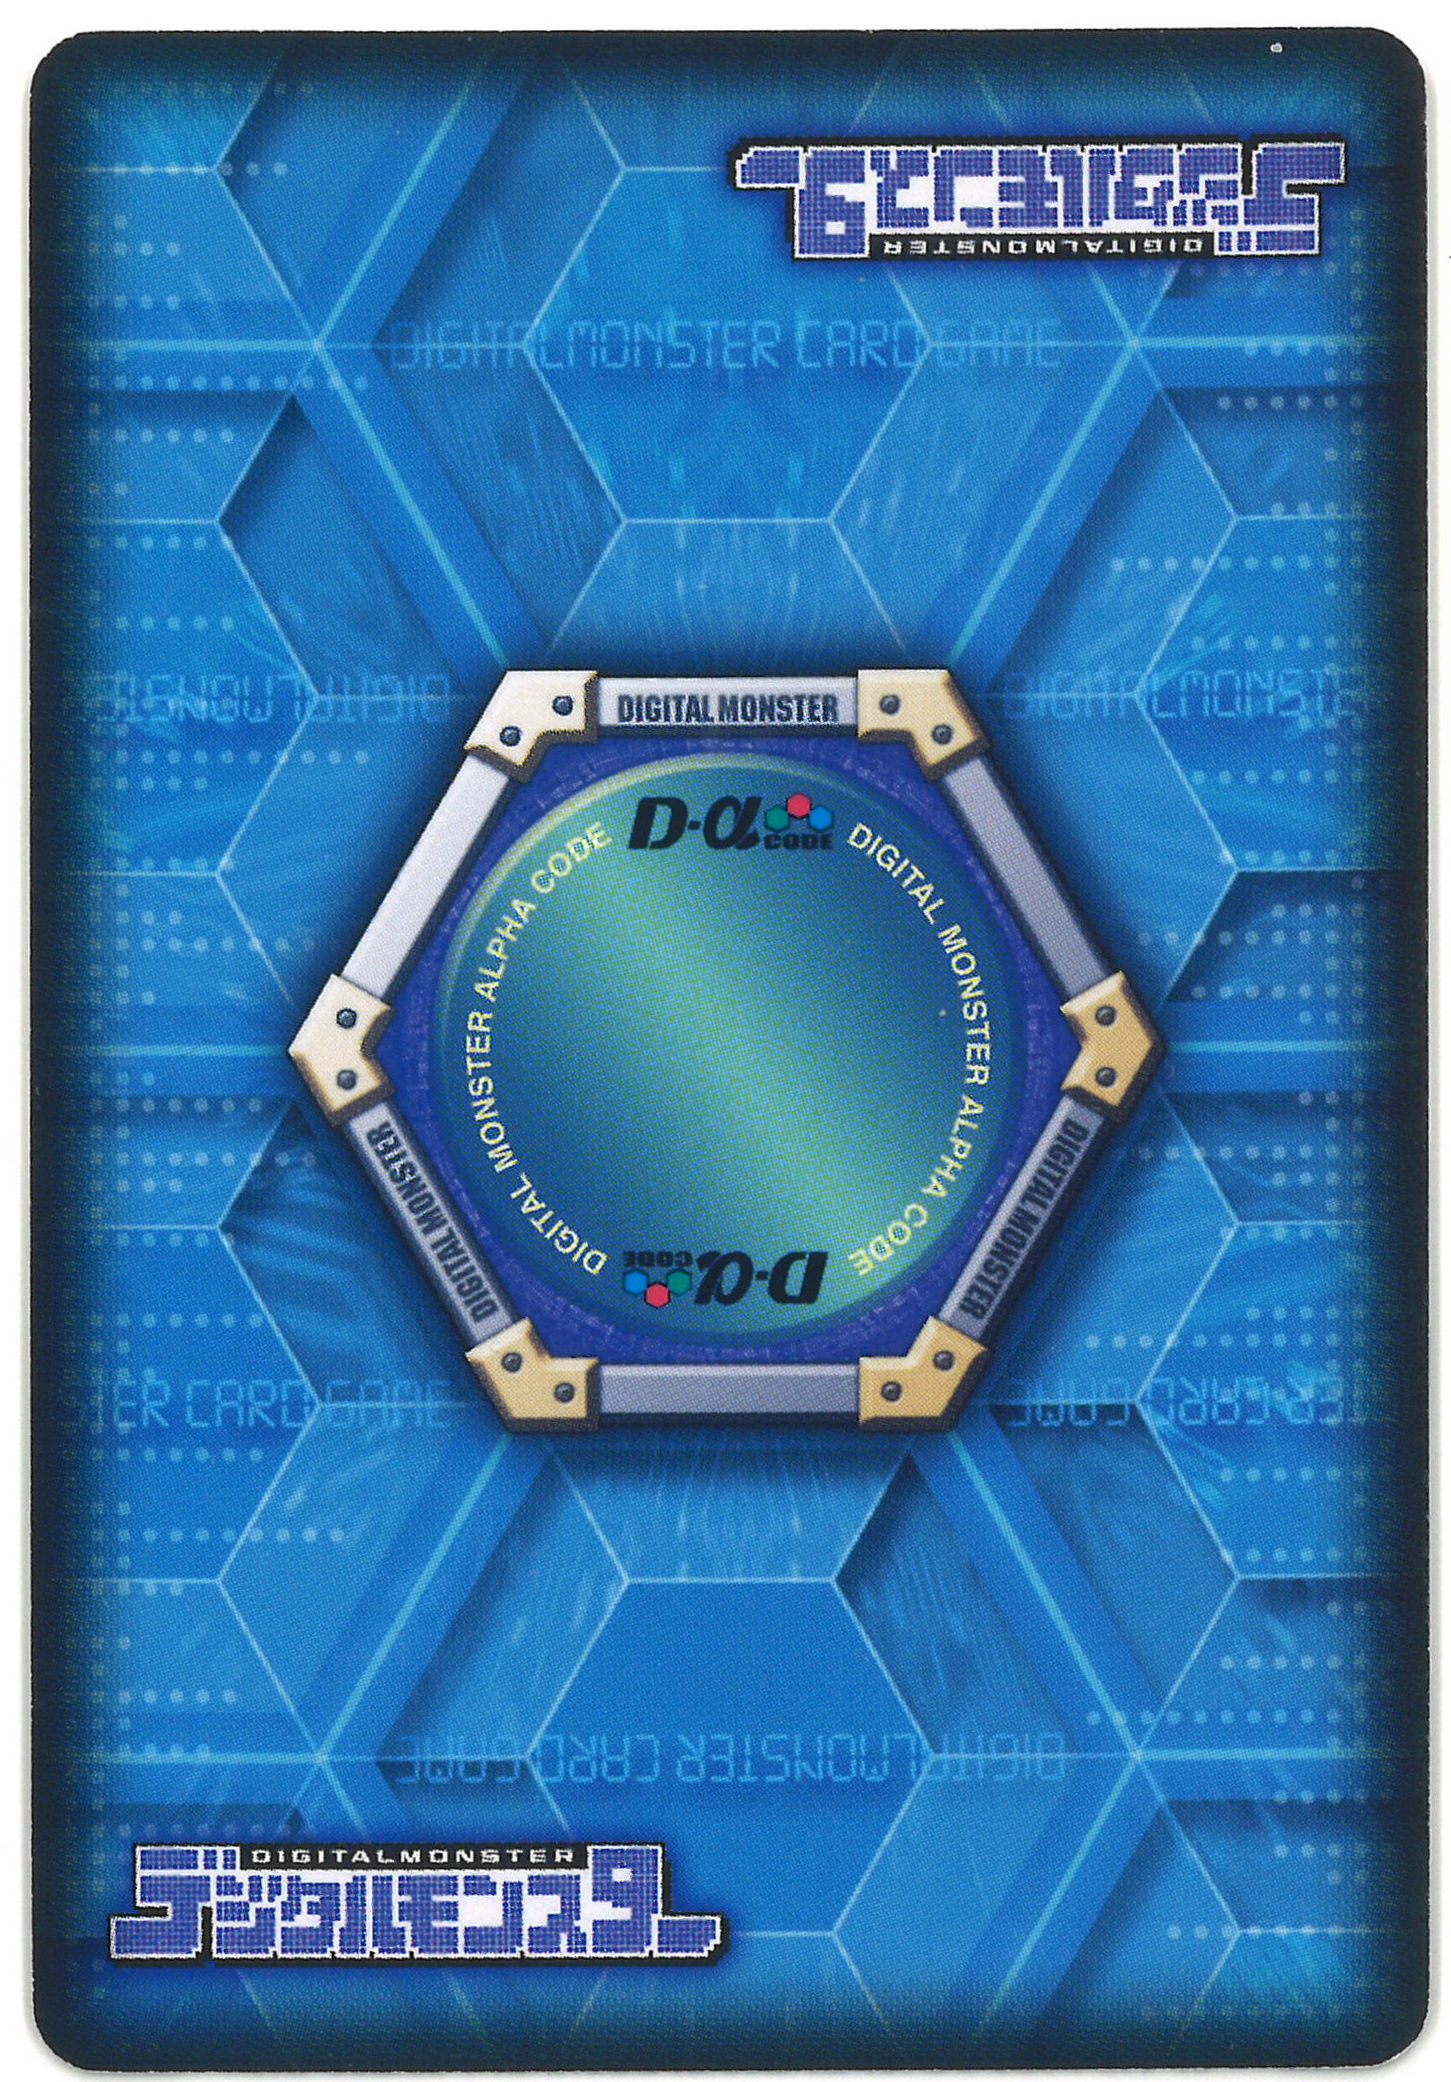 DCD デジモン カード 究極対戦 バトルターミナル02 ボックス 1弾&2弾